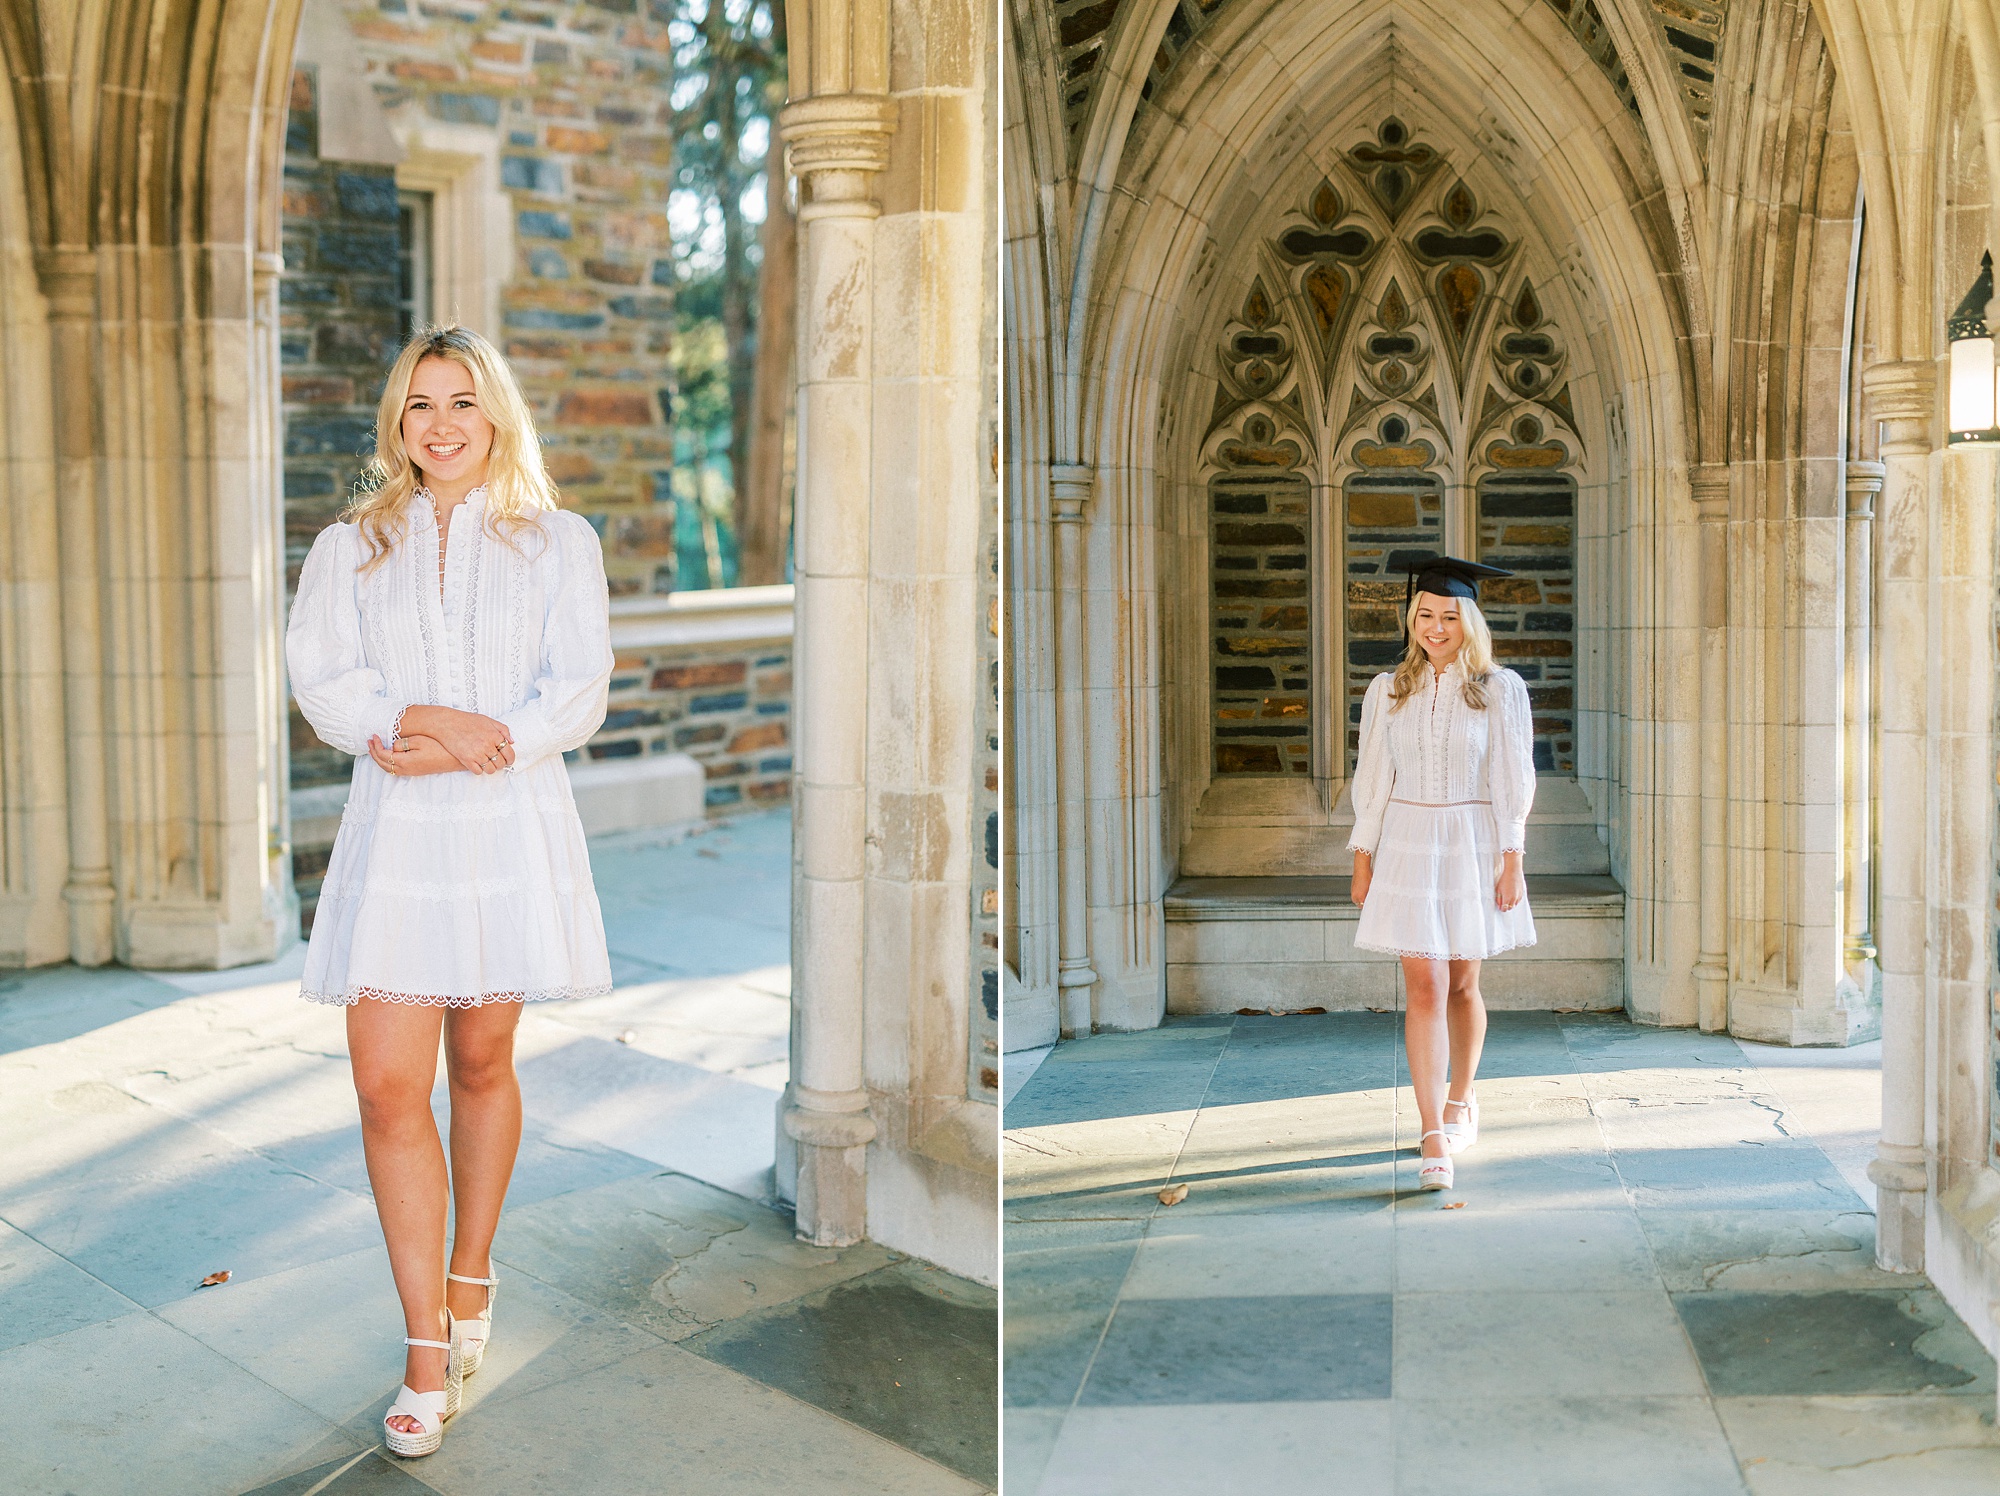 Duke University graduation portraits for girl in white dress by Duke Chapel